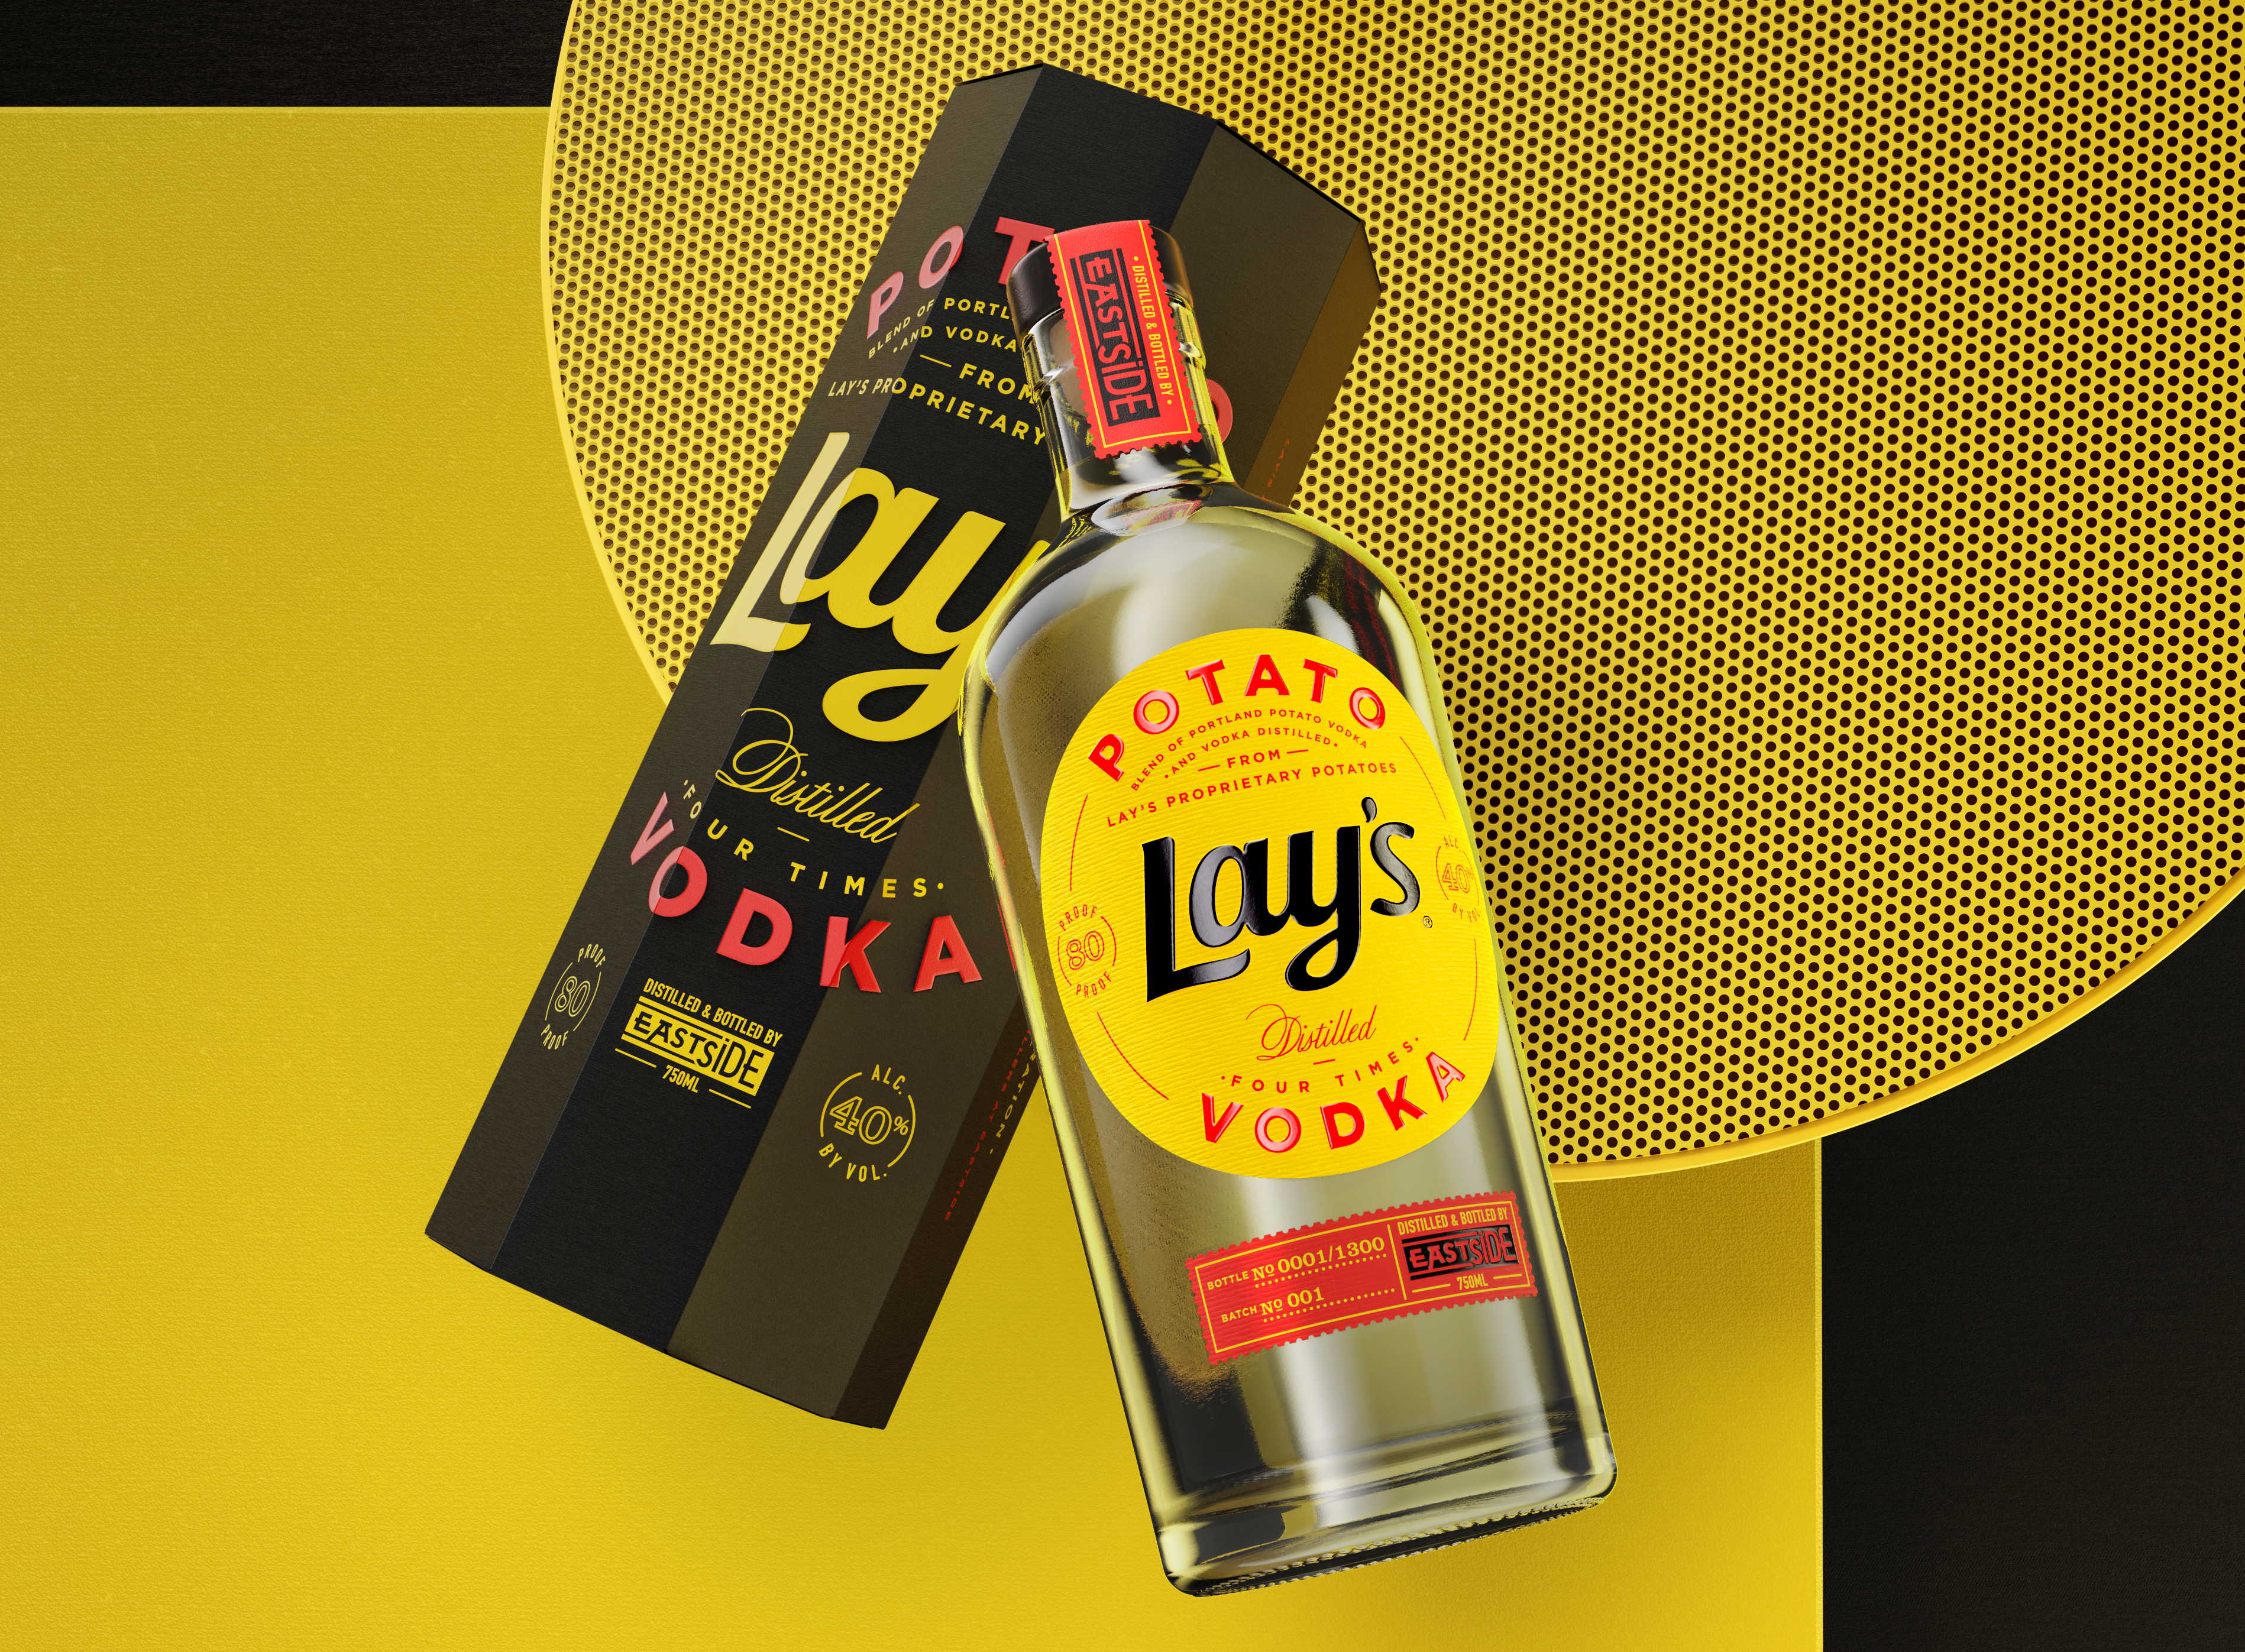 lays-vodka-bottle-box-crop-2.png